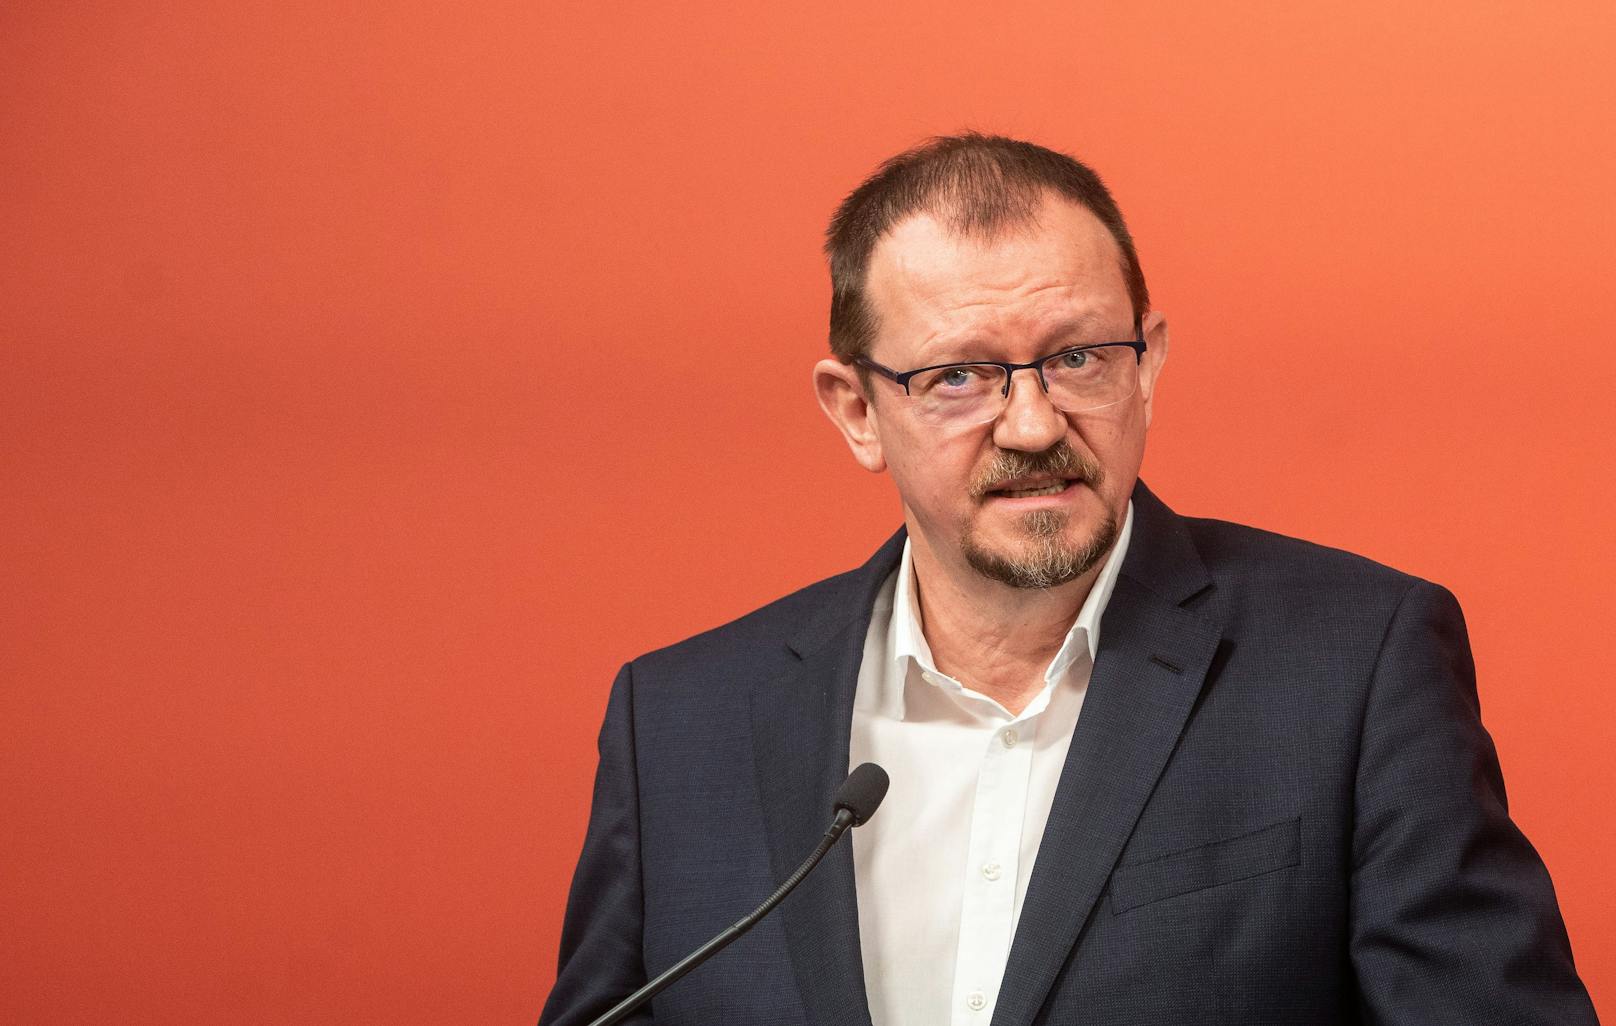 Rudi Silvan von der SPÖ will den Rücktritt von Kern und sammelt jetzt Unterschriften für den Erhalt von "Eibetex".